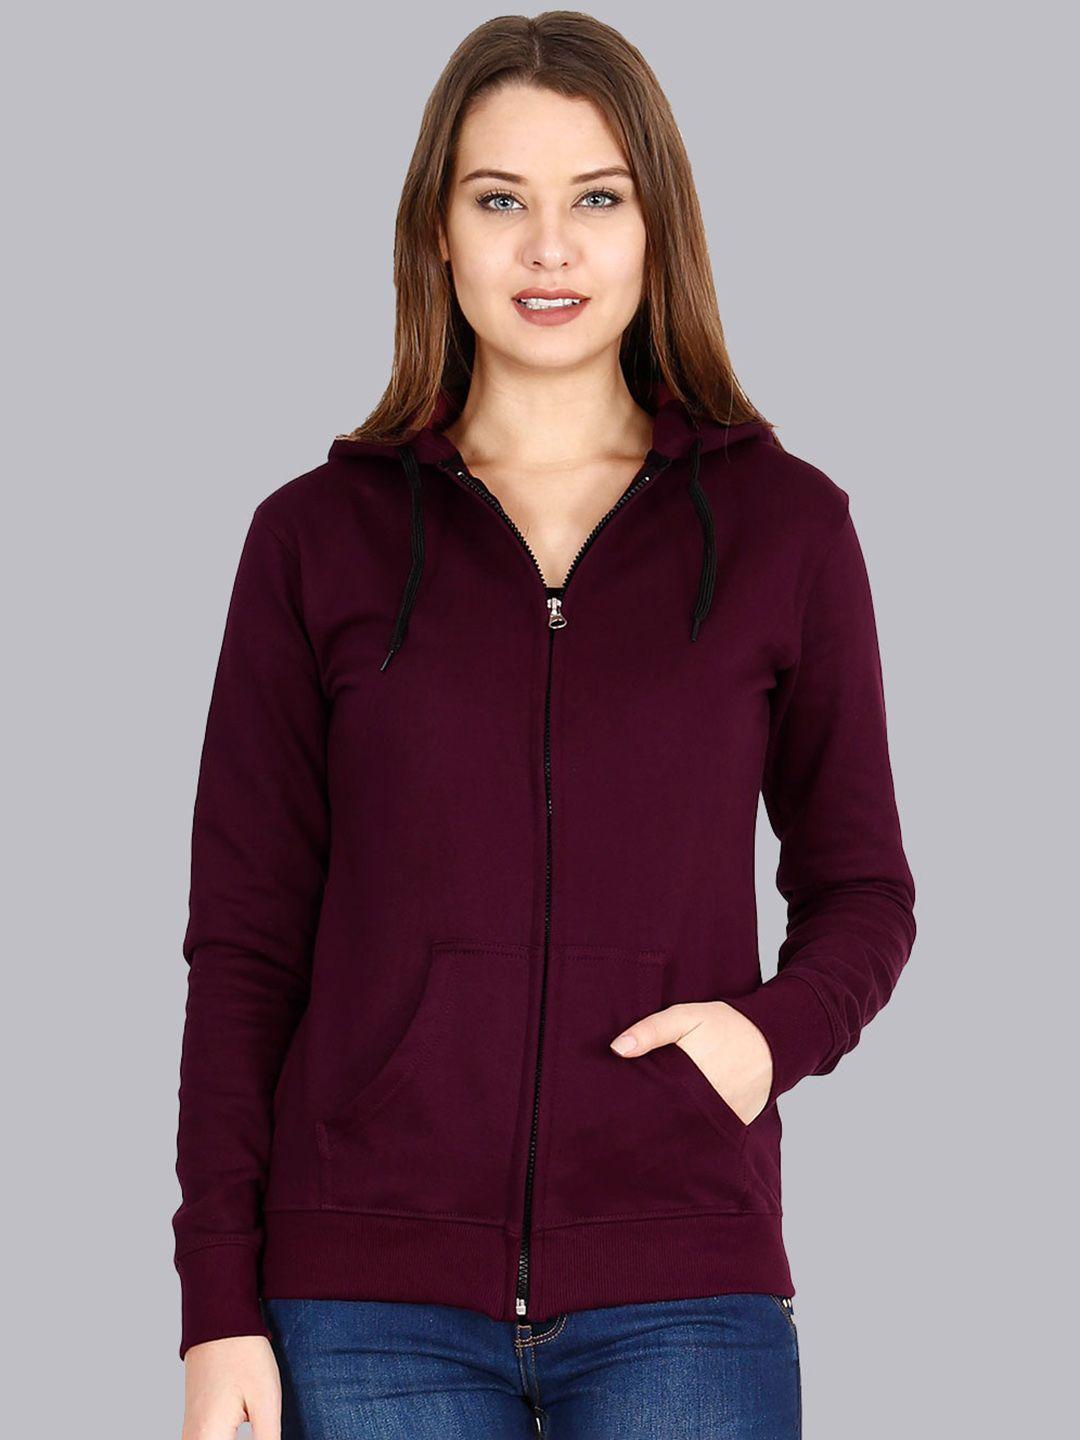 fleximaa-women-maroon-hooded-sweatshirt